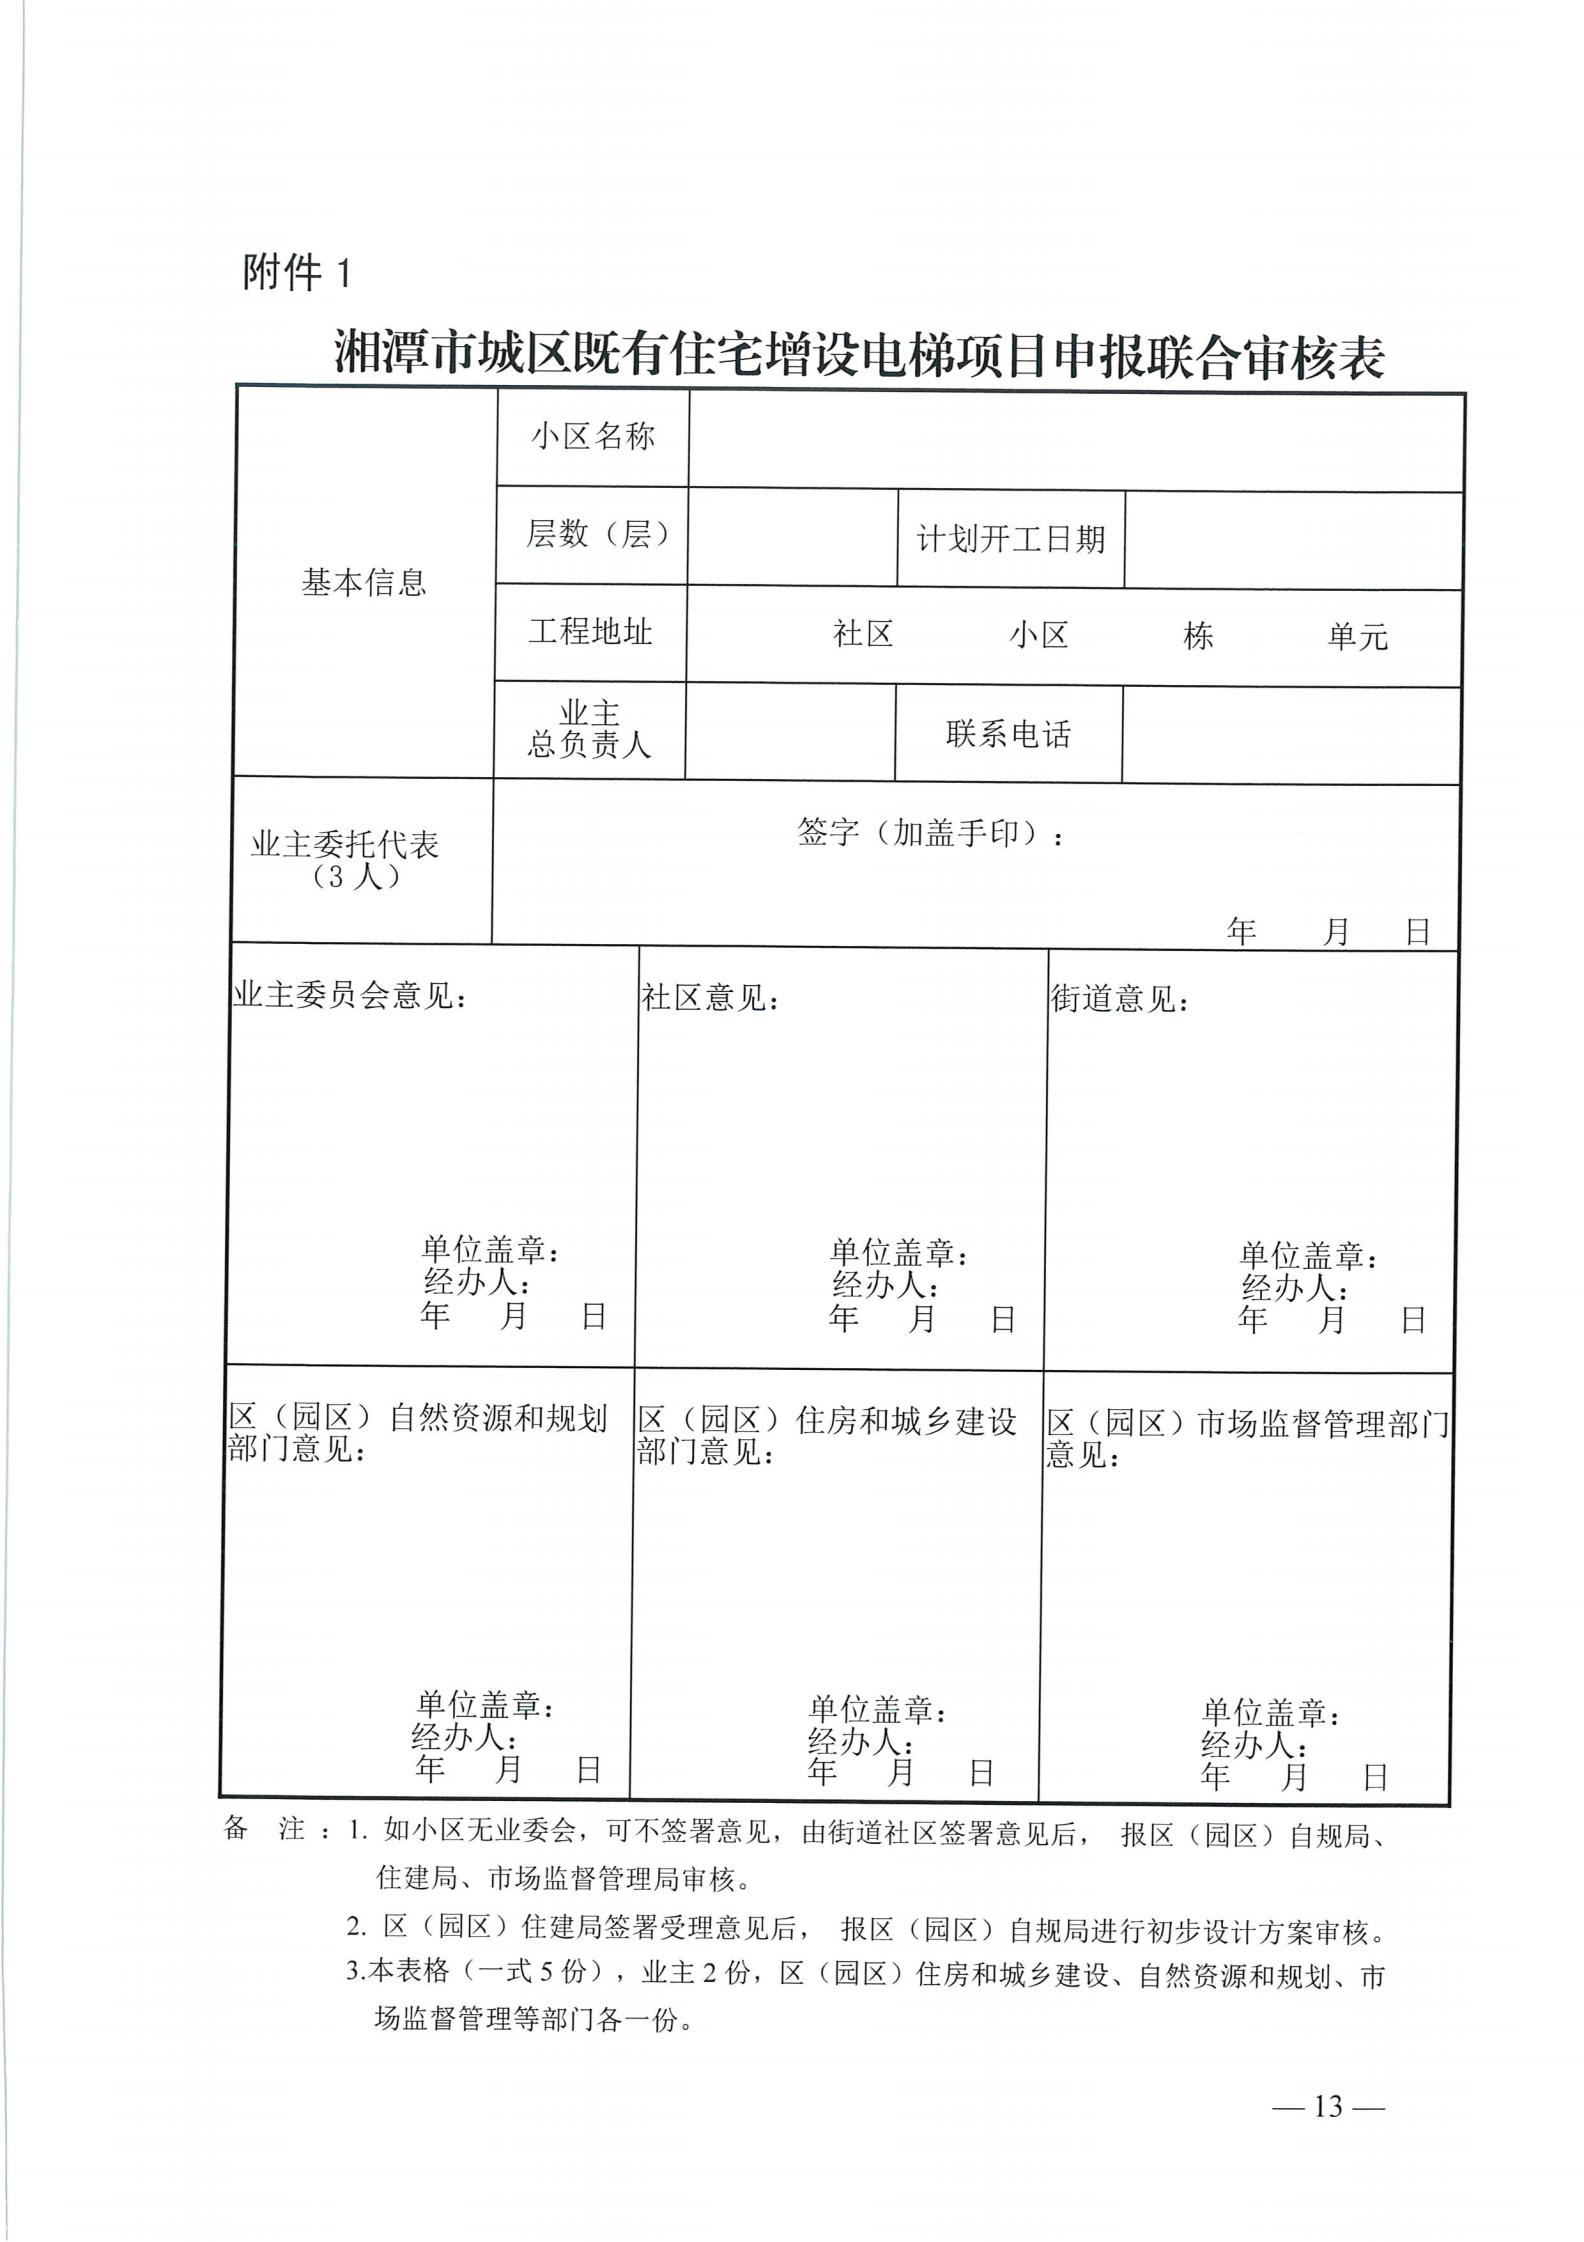 湘潭市六部门印发有关加装电梯的通知(图13)